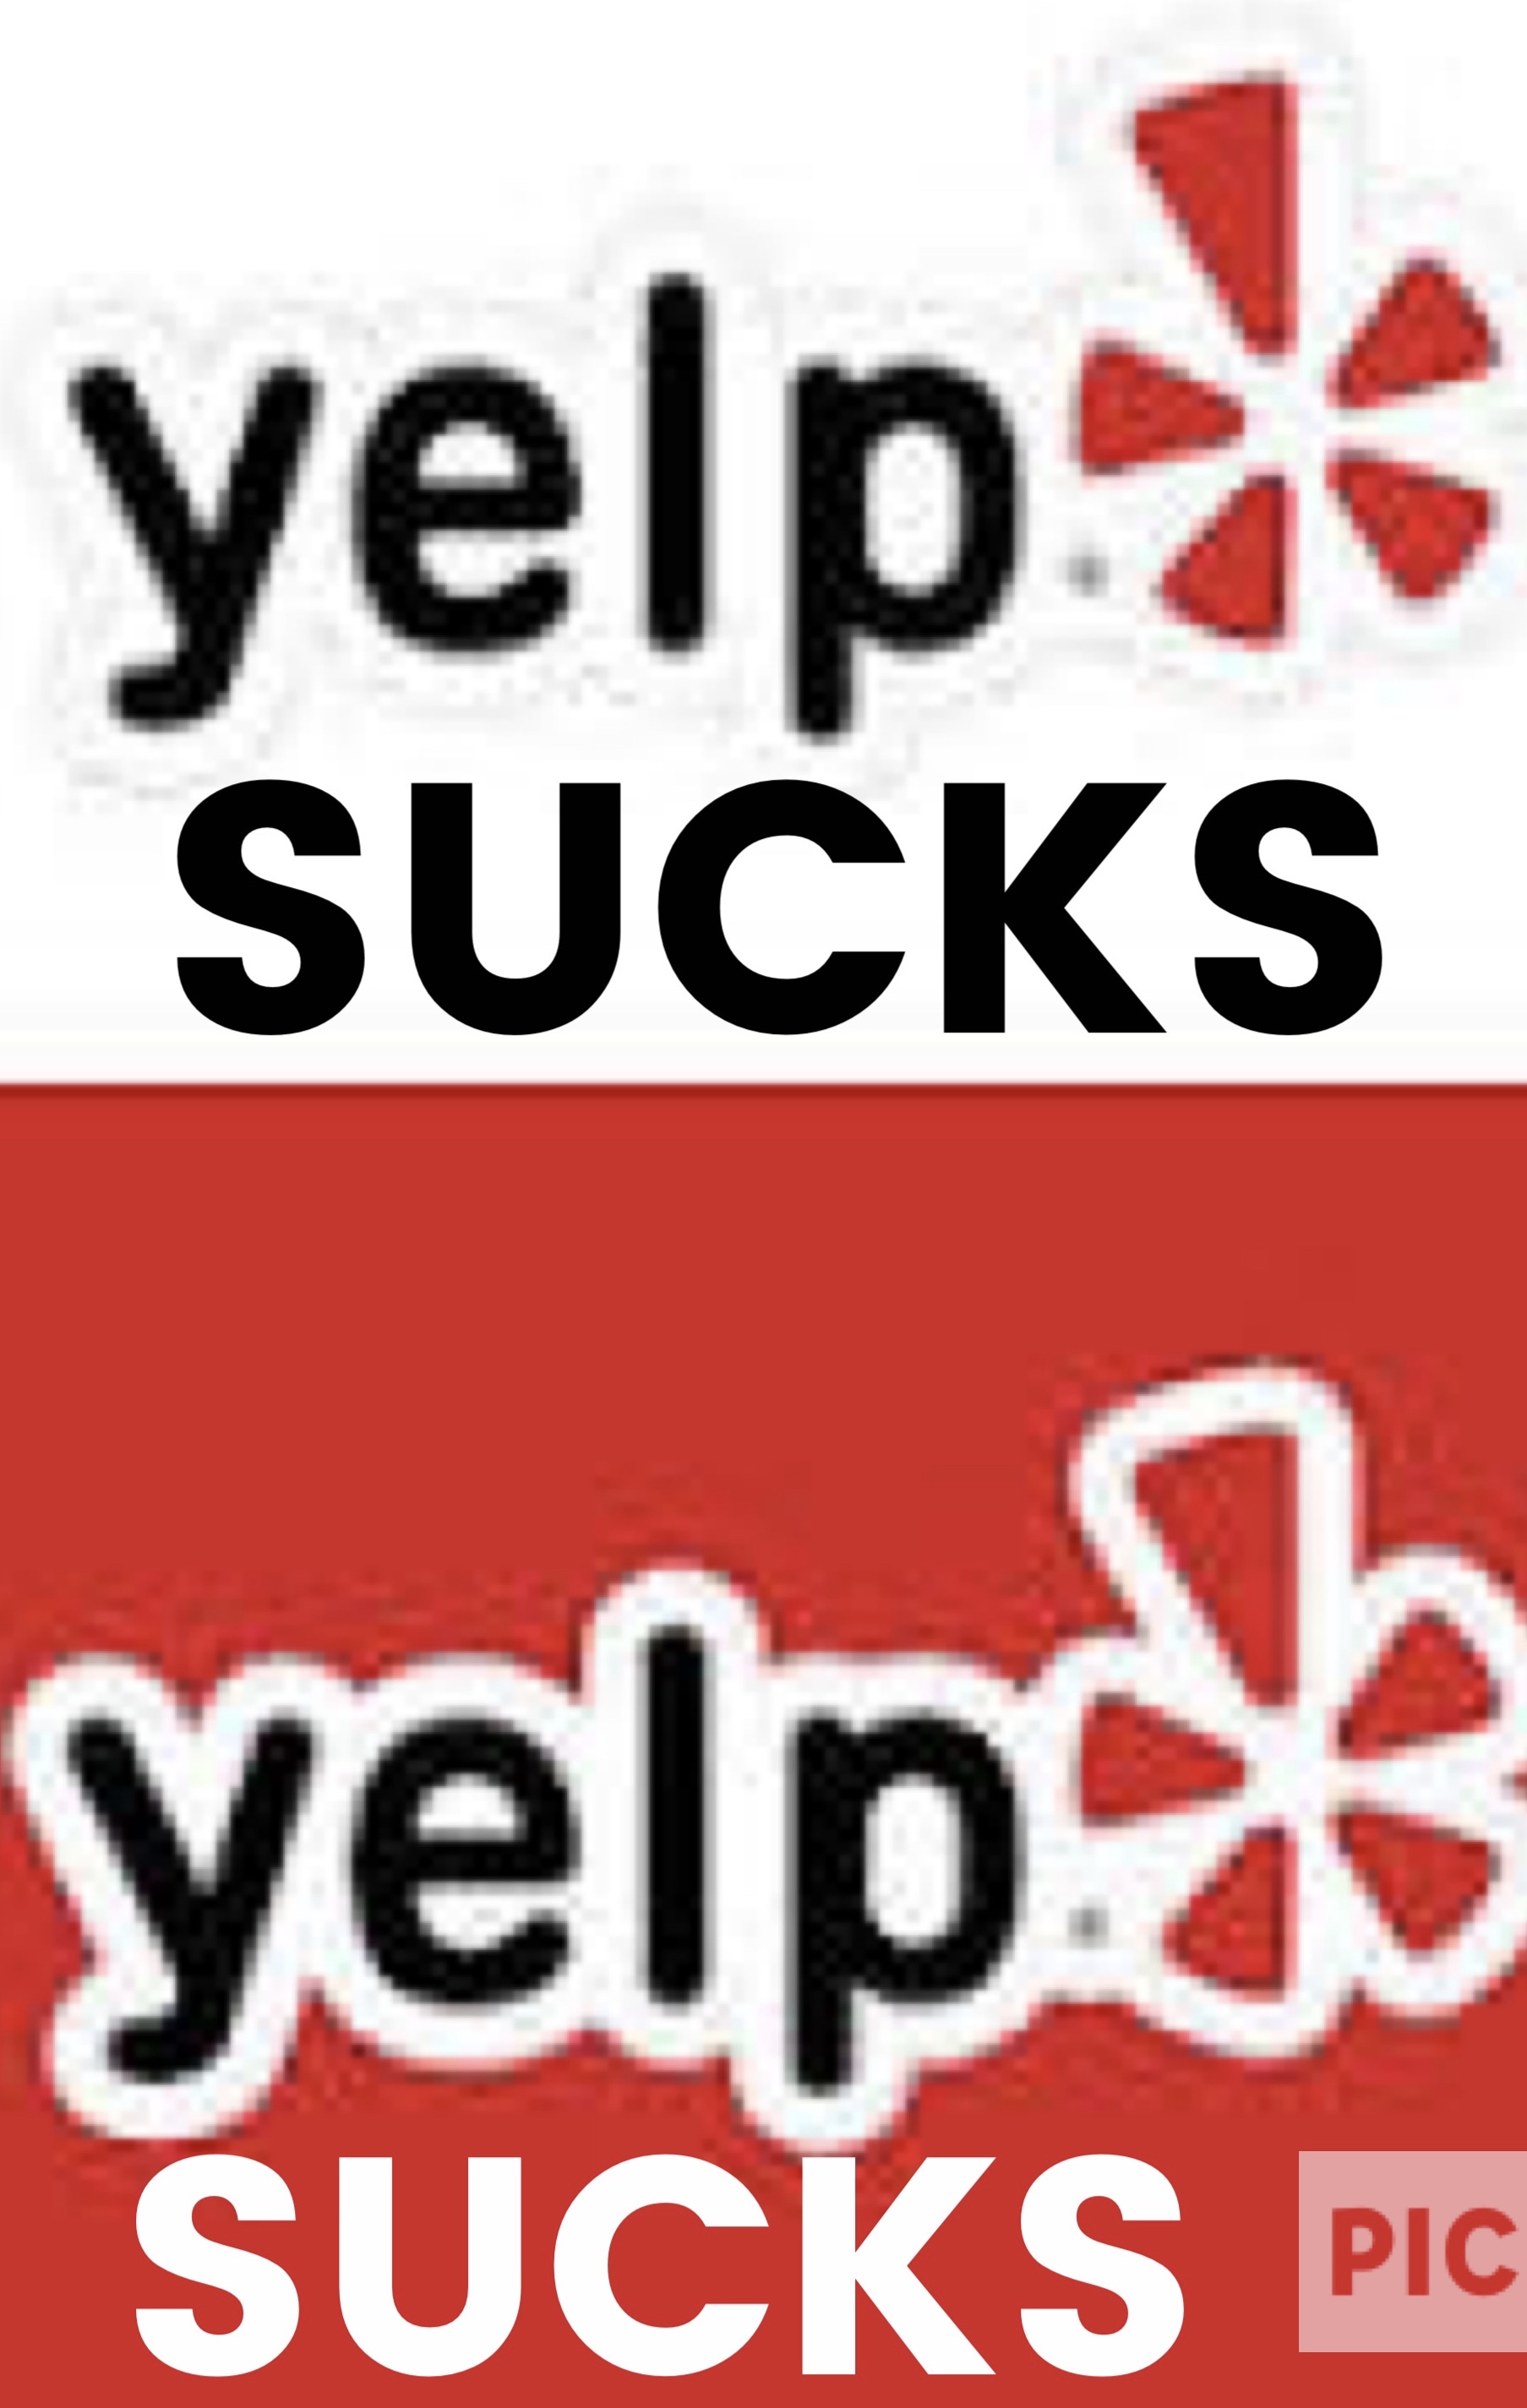 yelp reviews on yelp